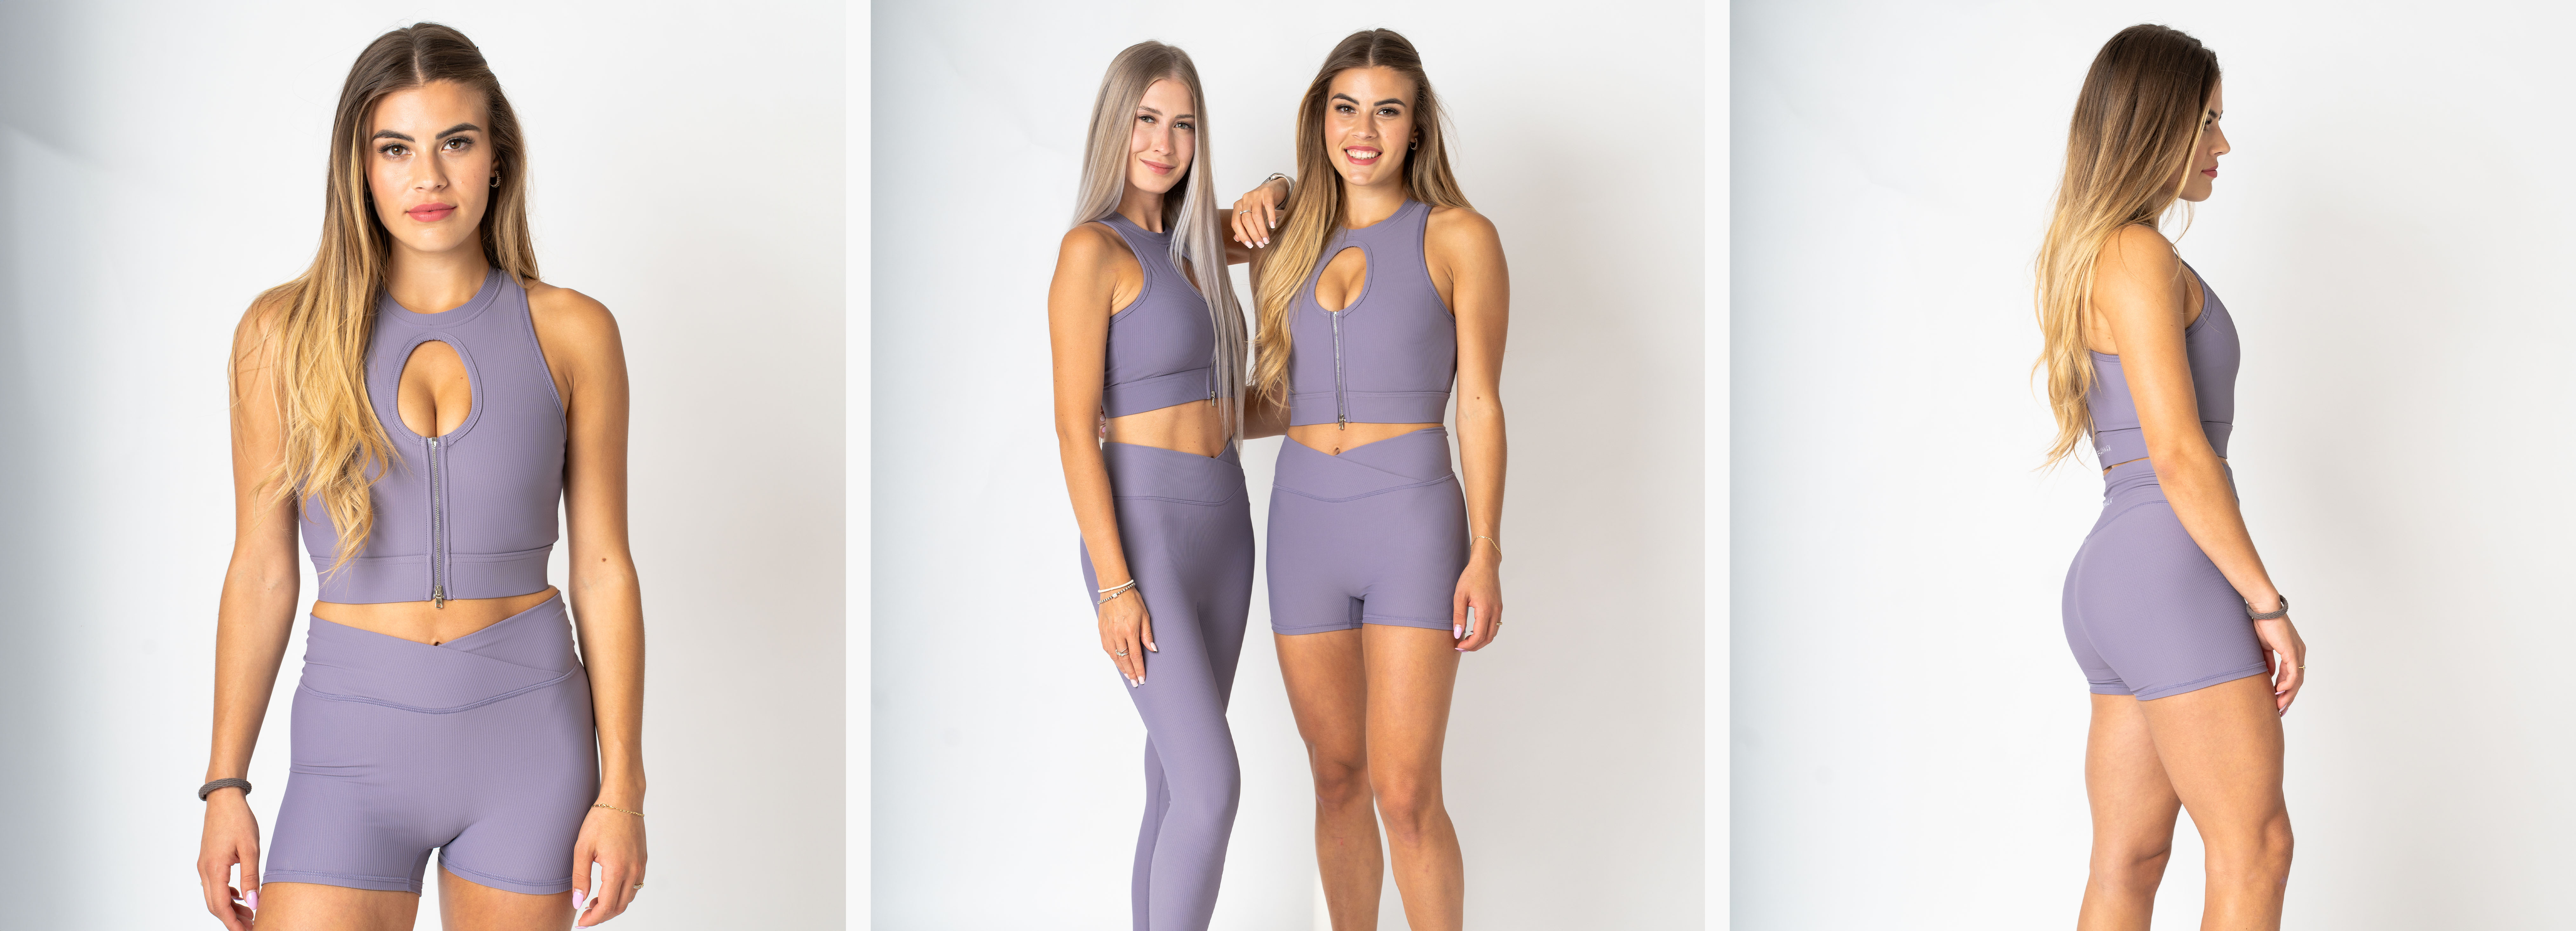 sportovni obleceni lgiht violet2